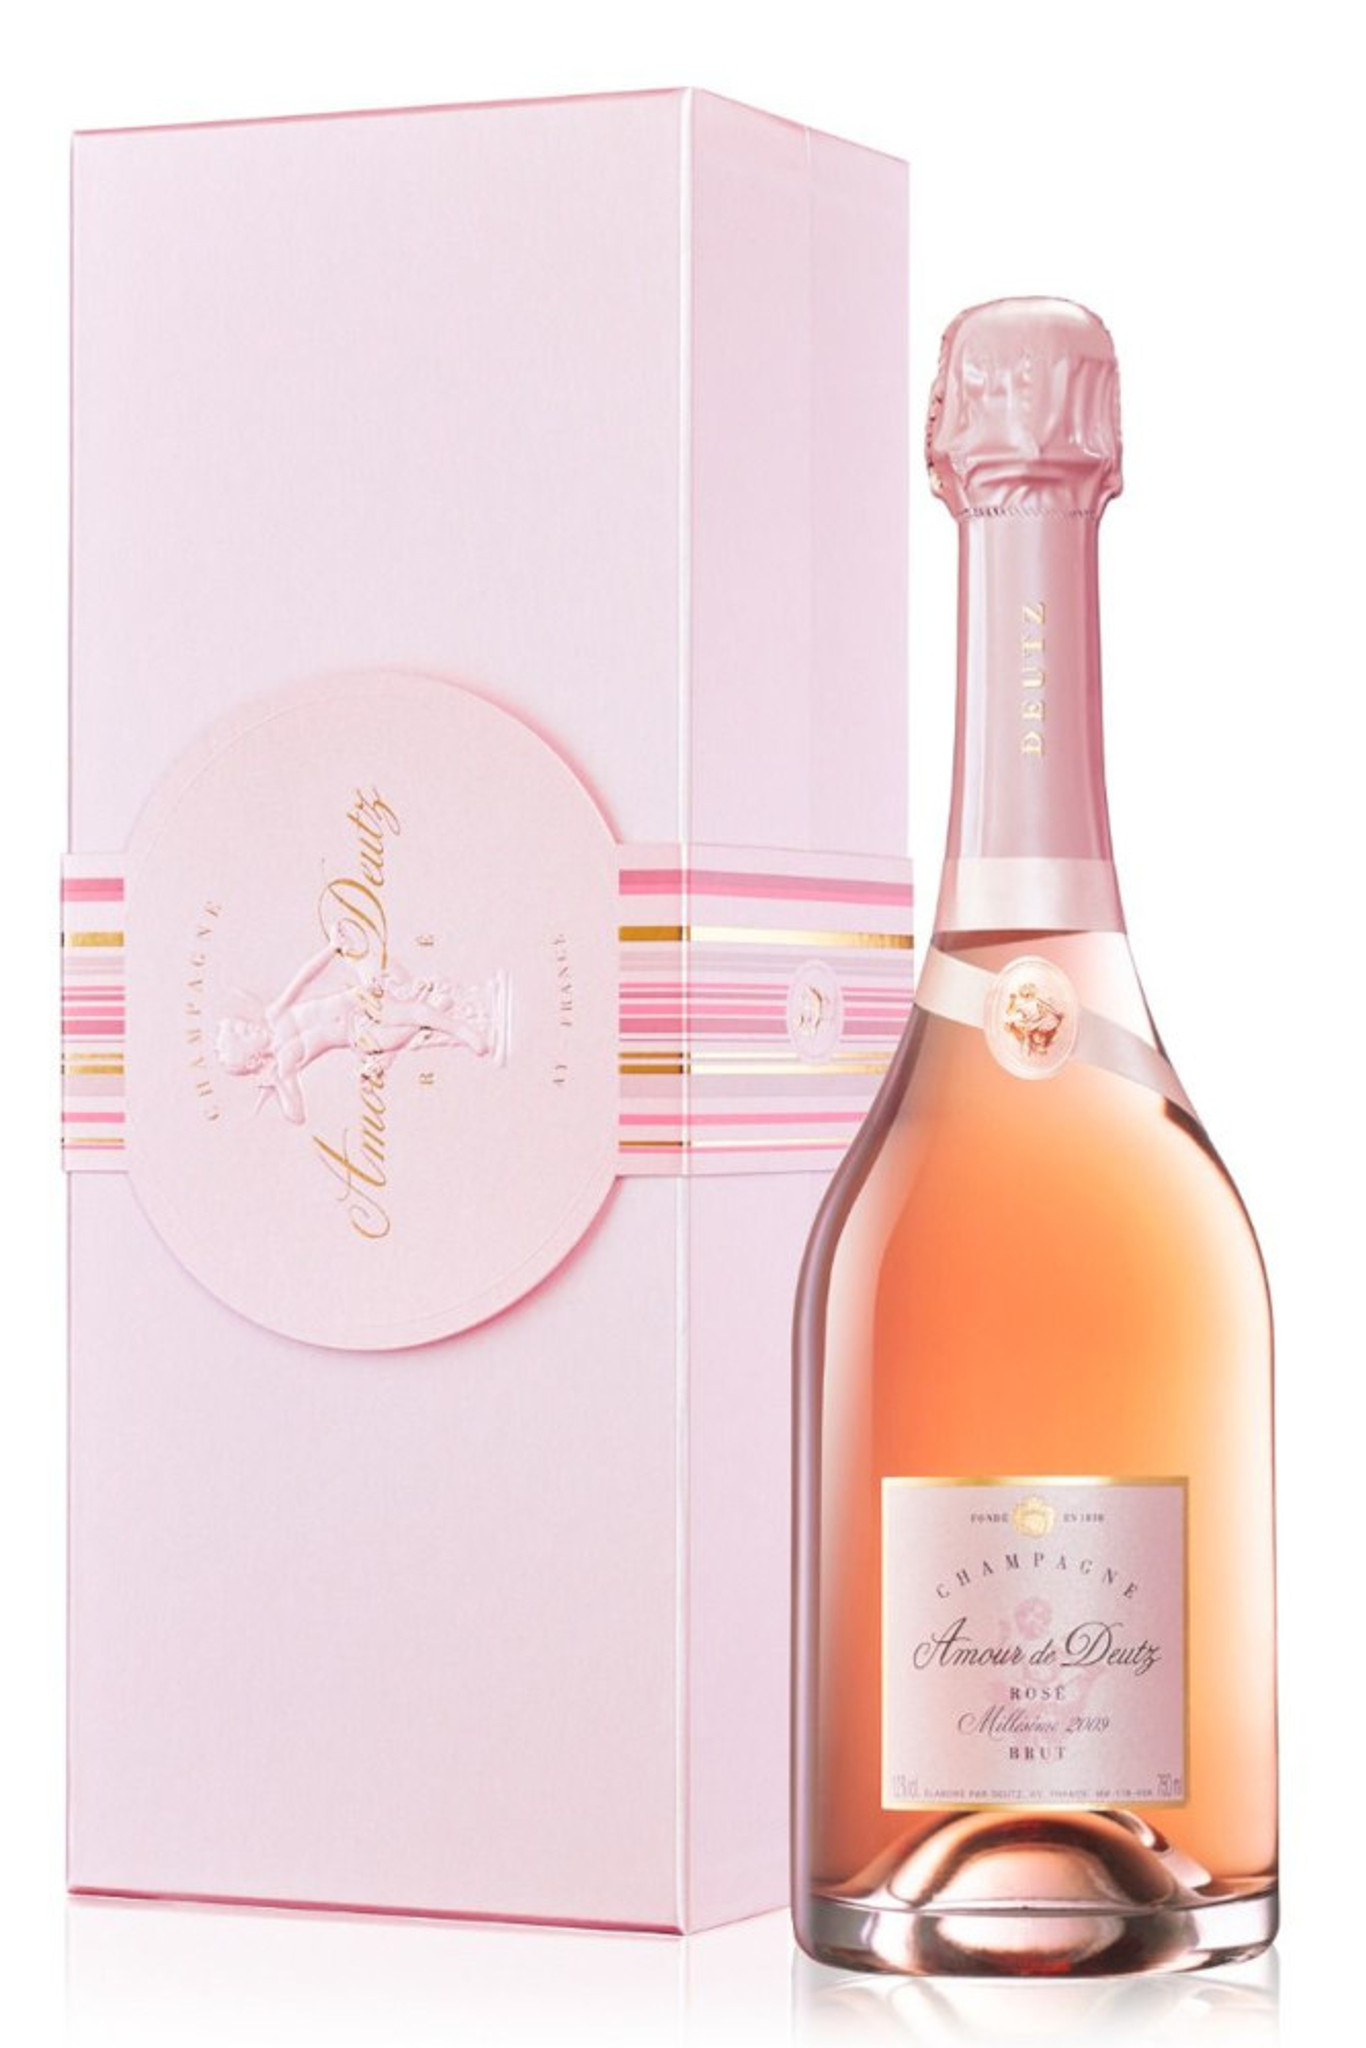 Champagne Deutz Brut rosé - Champagne Rosé